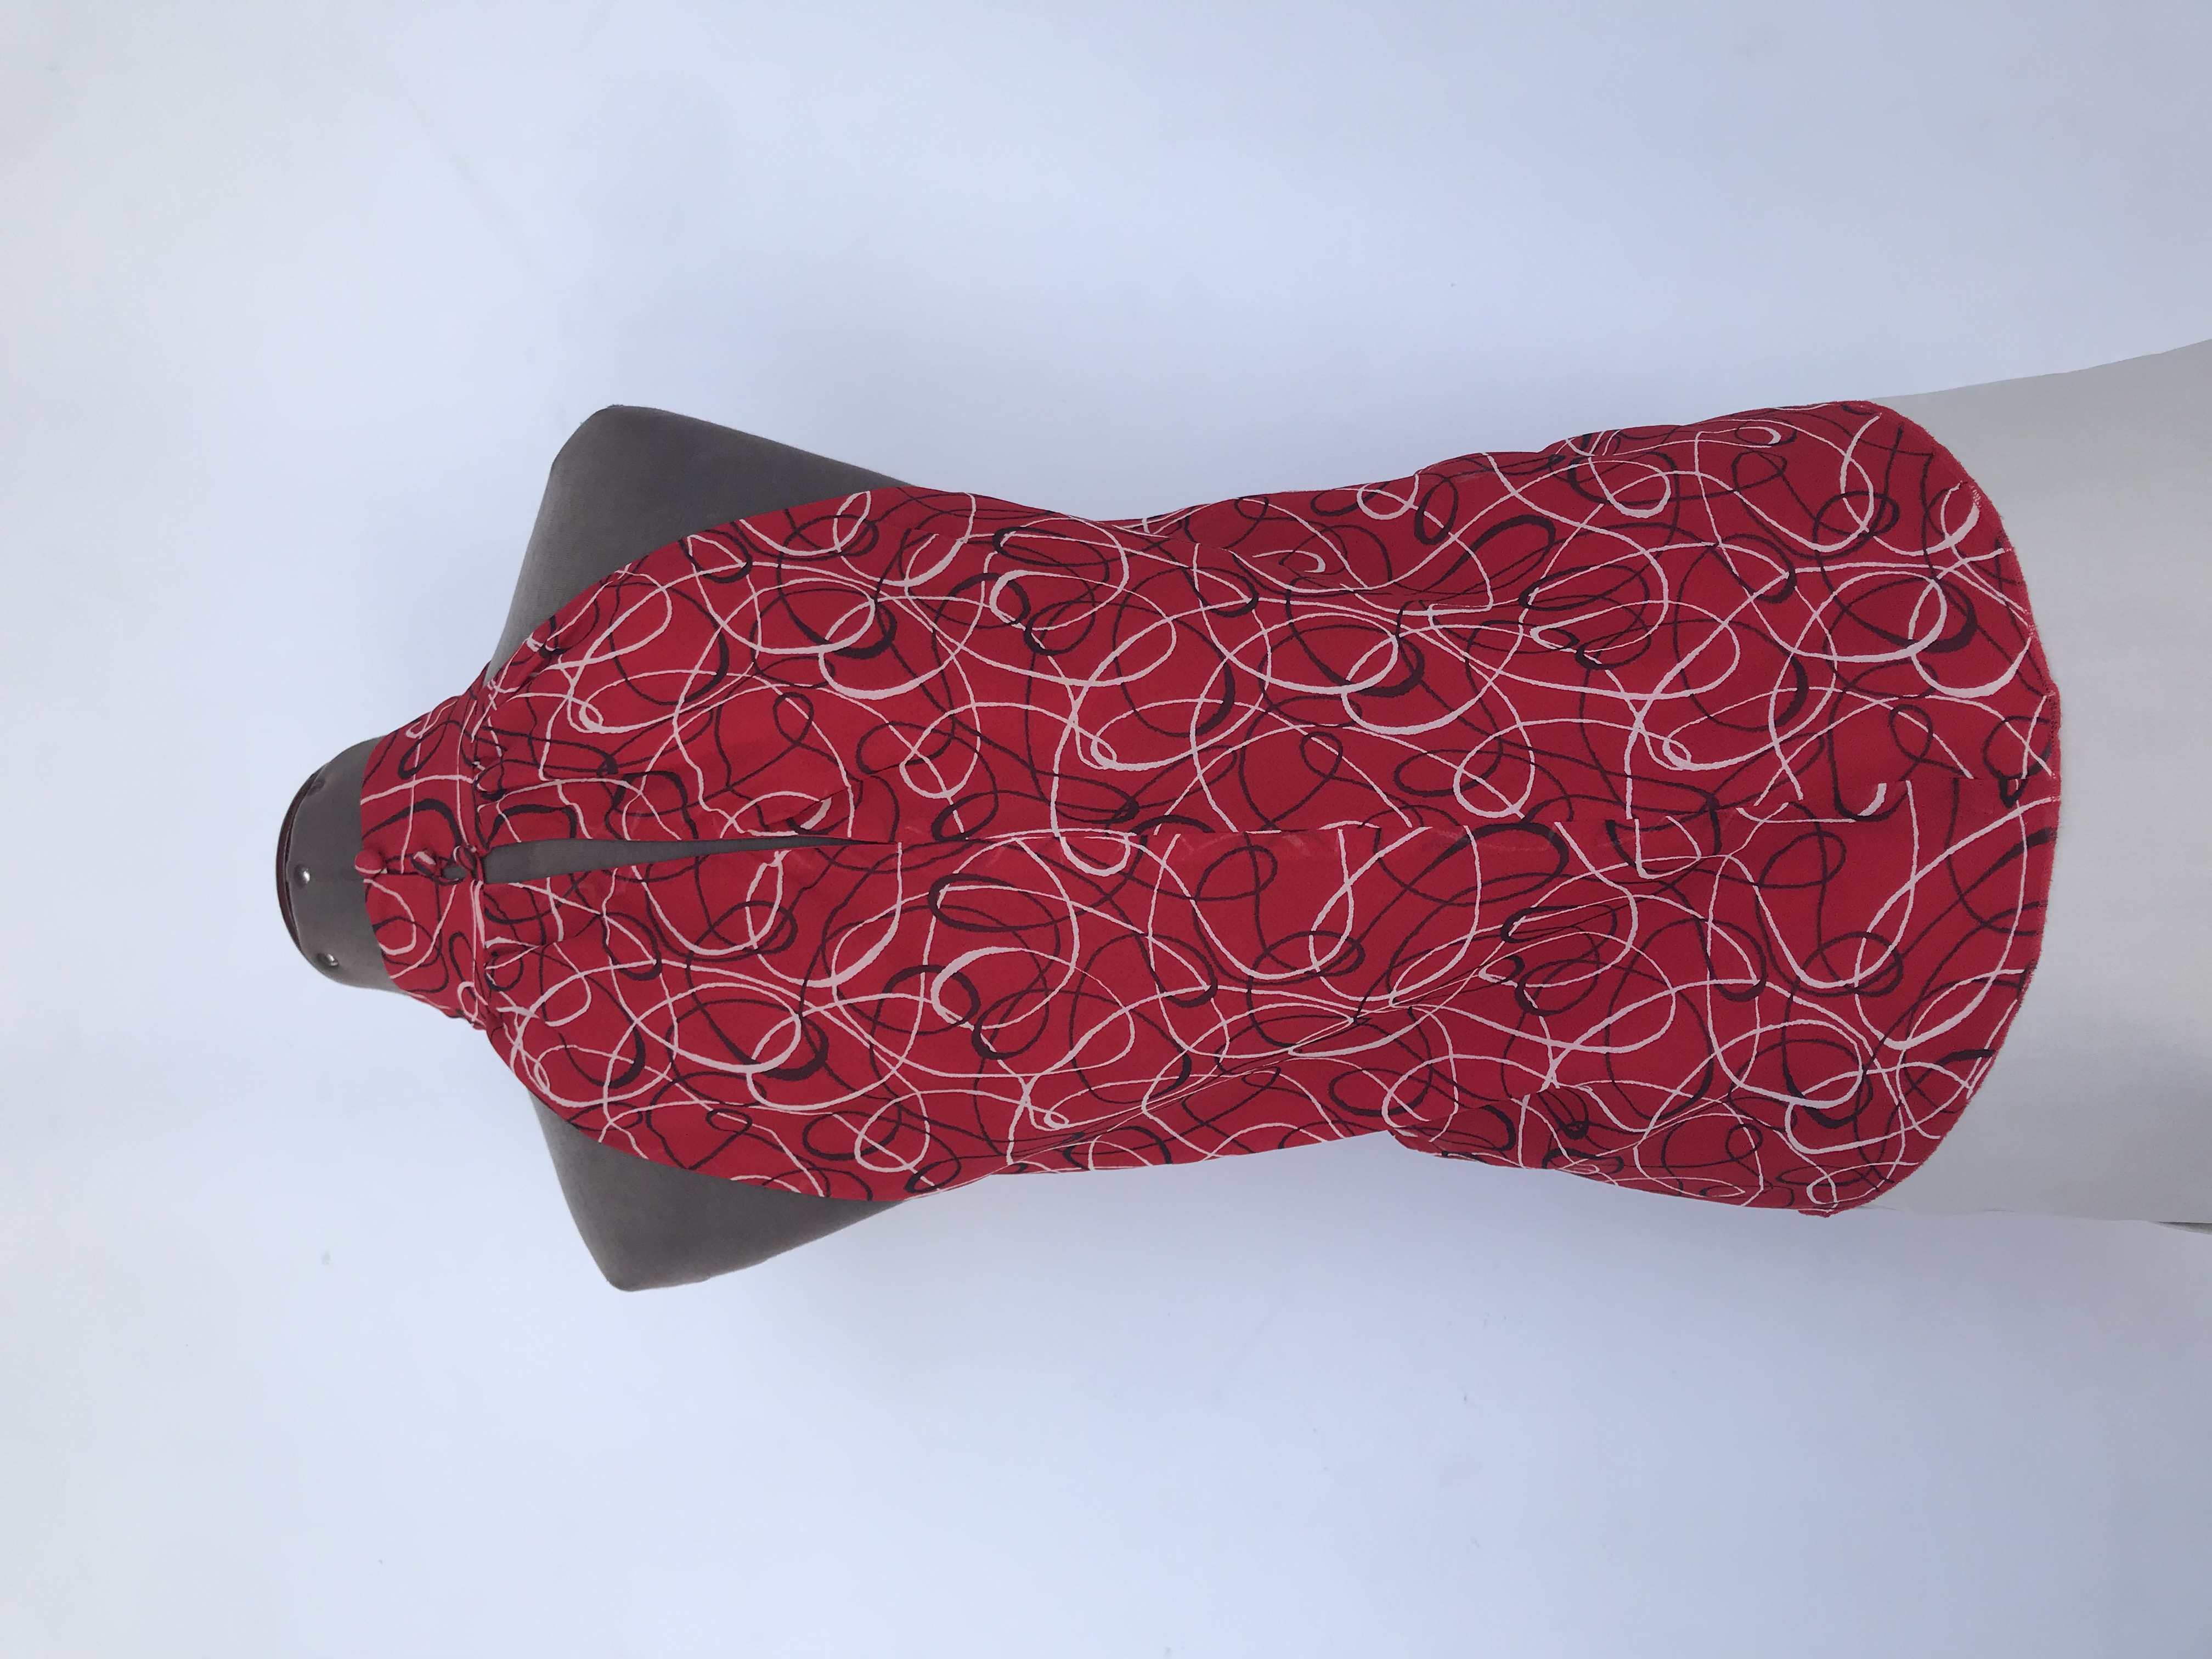 Blusa I.N.C de gasa roja con estampado de espirales crema y negro, cuello alto con botones posteriores, es forrada
Precio Original S/. 180
Talla S (8, Puede ser M)